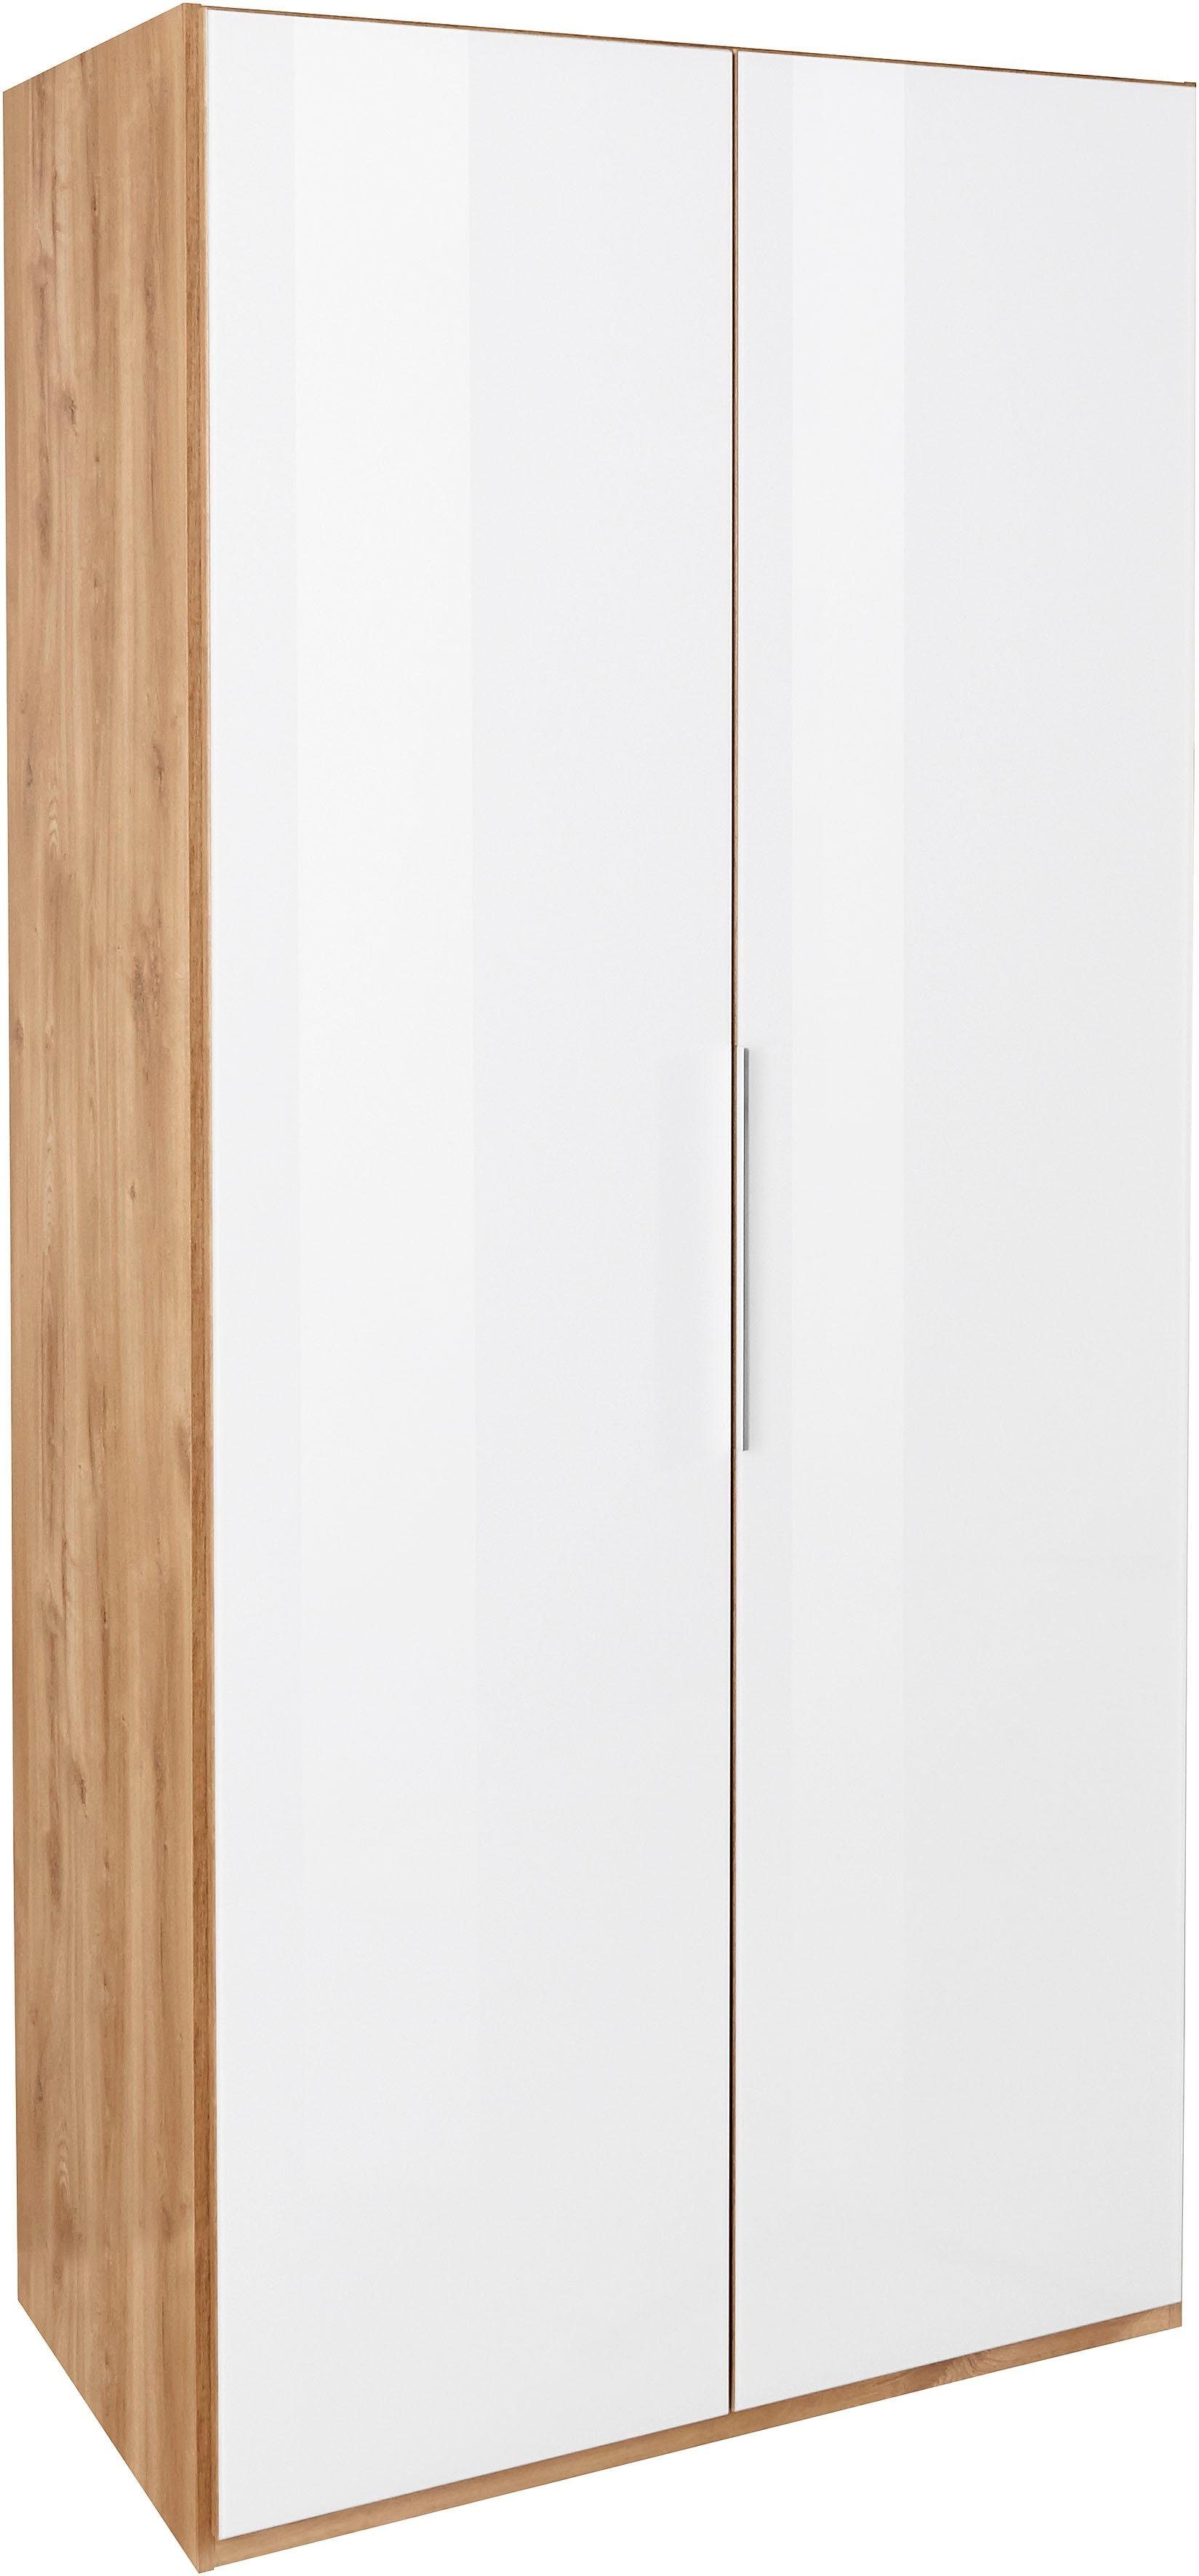 Türen Fresh Go plankeneichefarben/Weißglas mit Kleiderschrank vollflächig farbigem Glas To Level